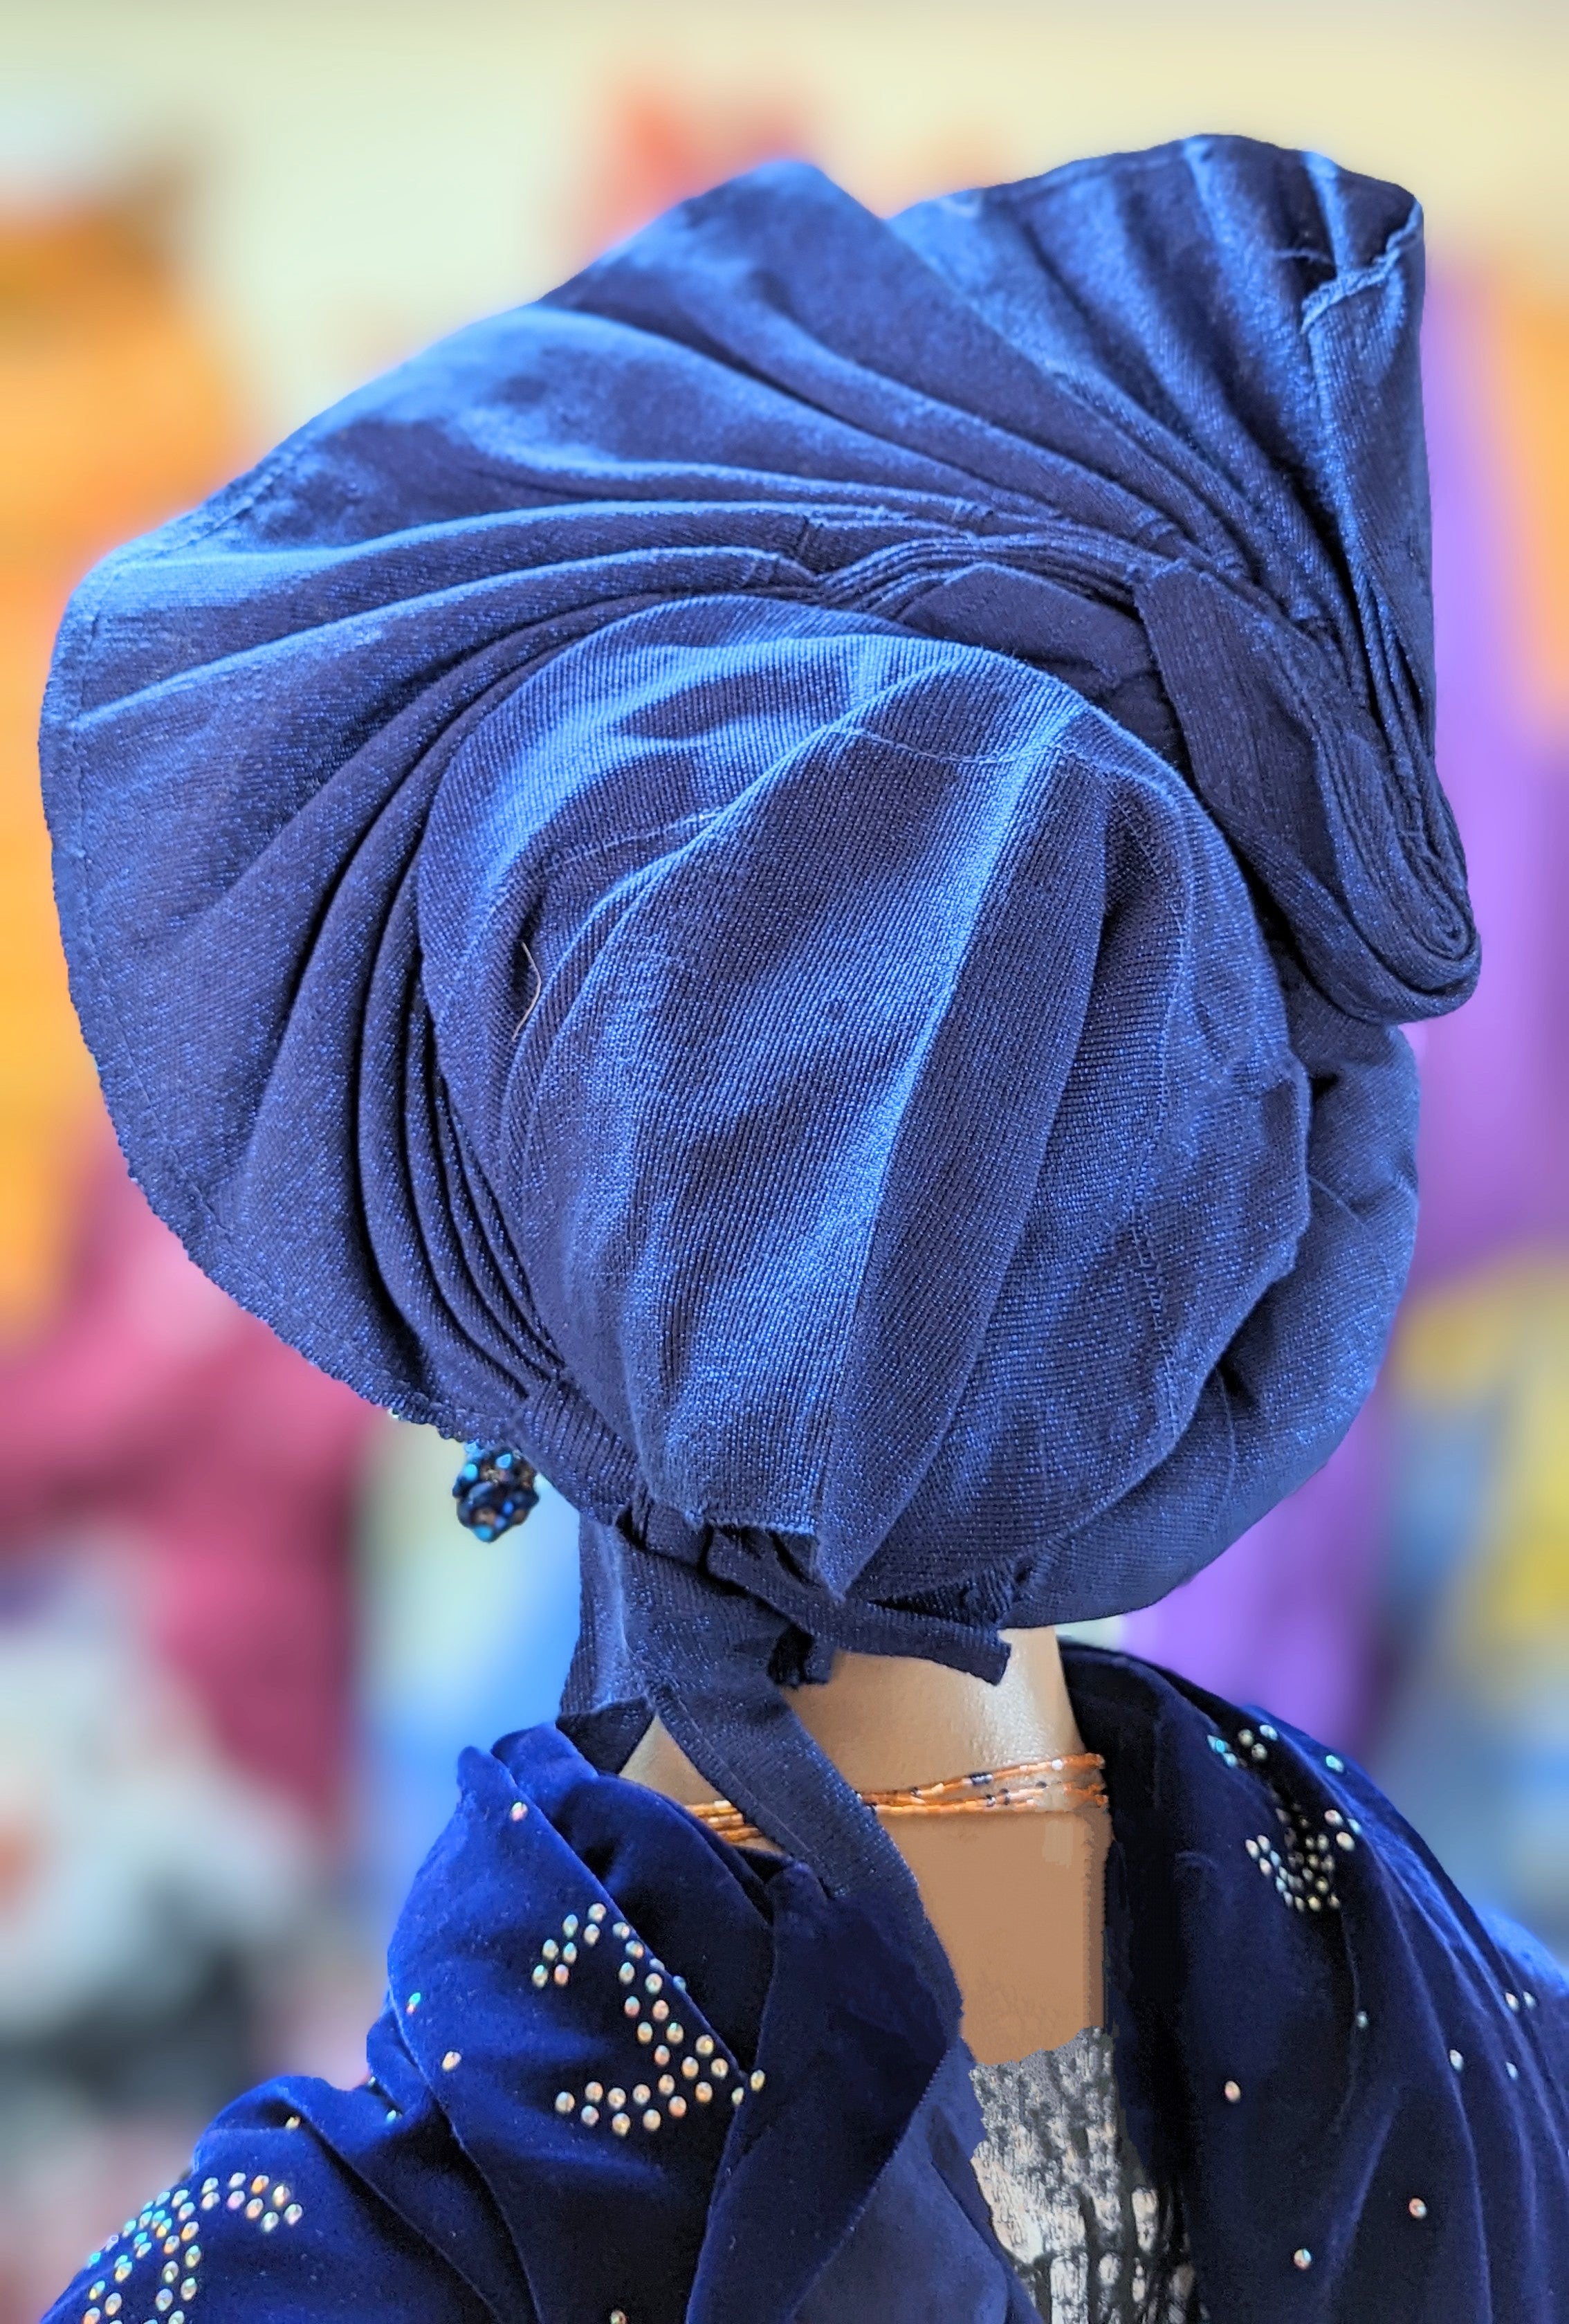 Royal Blue Autogele Gele African head wrap Aso Oke Dupsie's